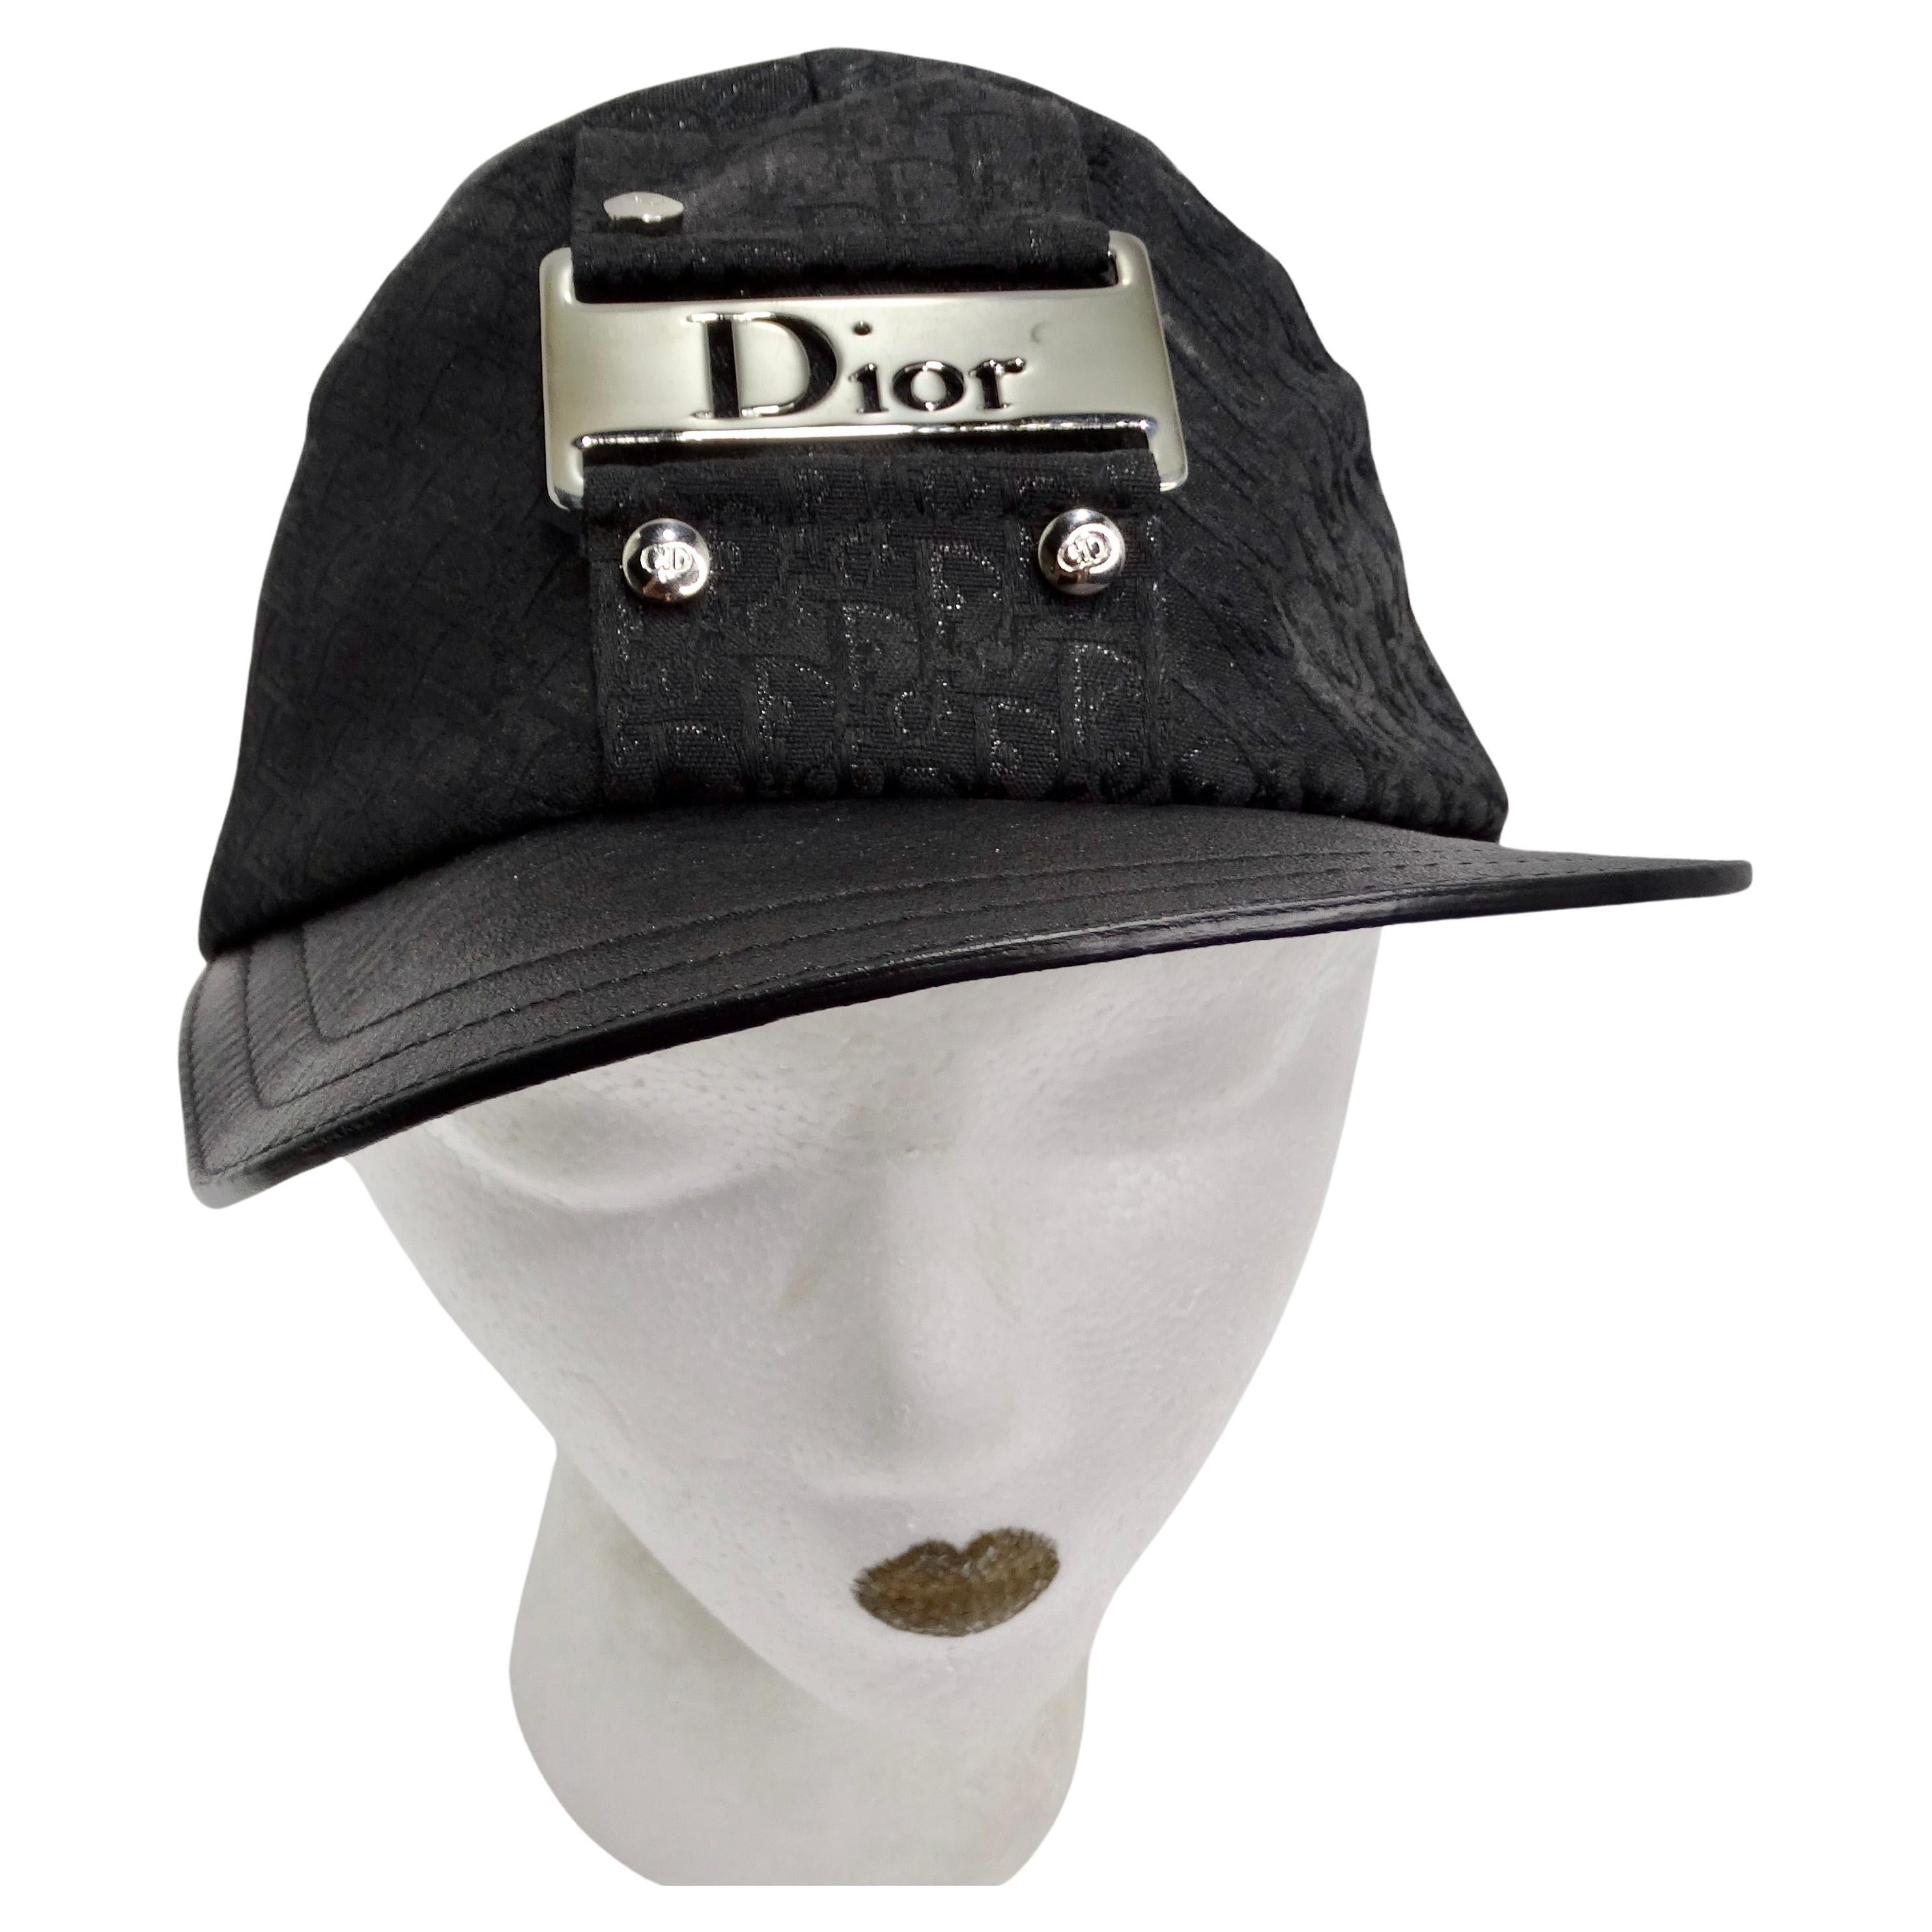 Voici la casquette de baseball Christian Dior by John Galliano 2002 Trotter Monogram, un accessoire intemporel et emblématique qui incarne le luxe et le style. Ornée du monogramme trotteur signature de Dior en toile noire, cette casquette de style